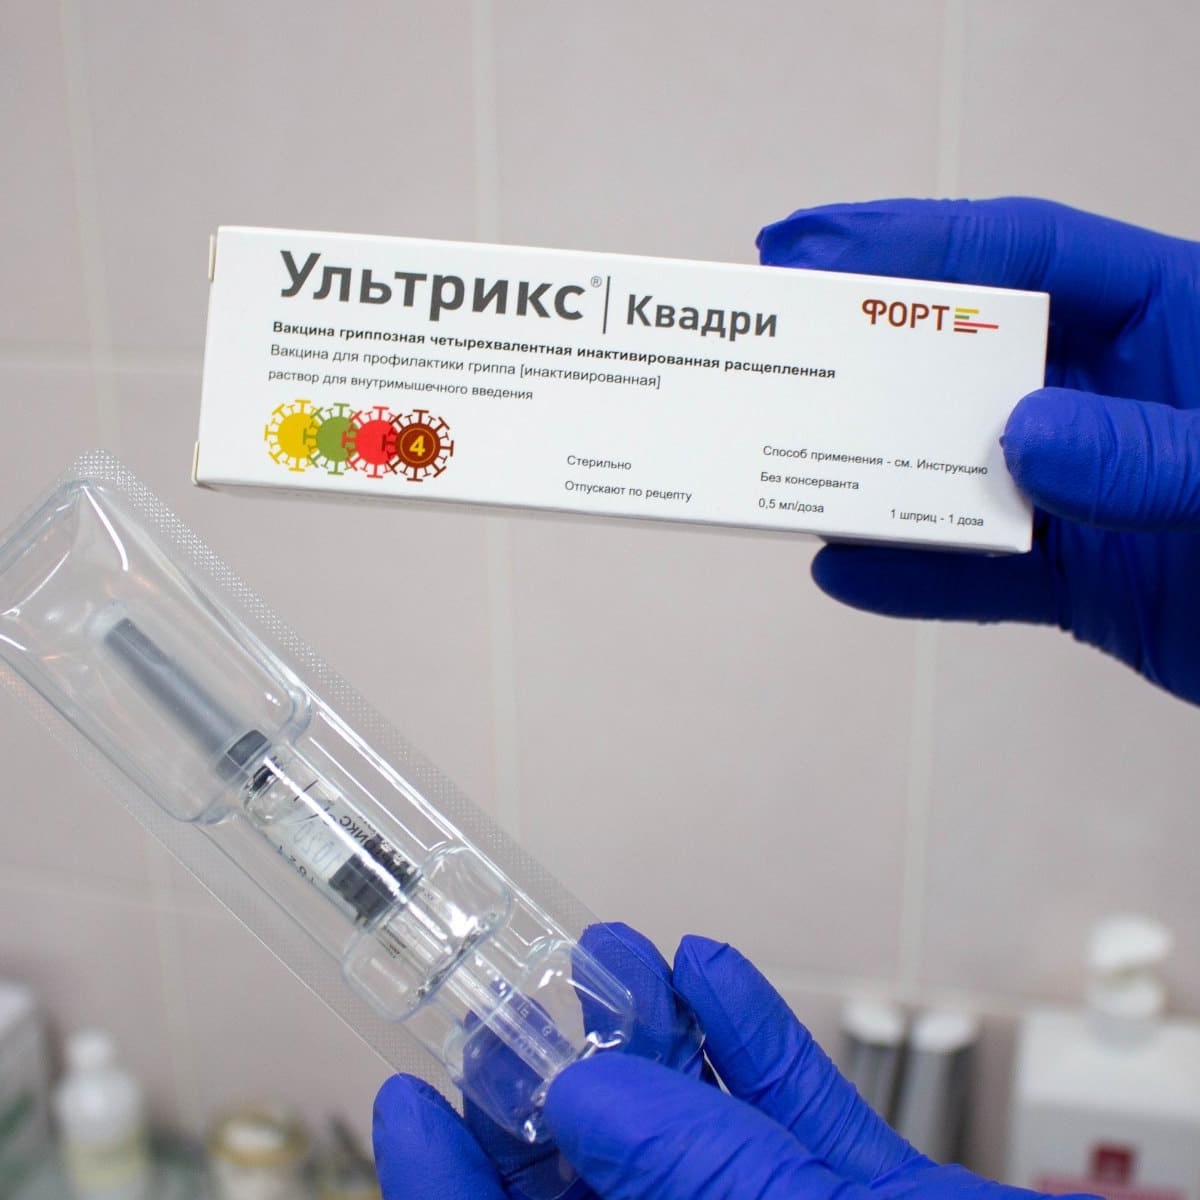 В Смоленской области продолжается кампания по вакцинации против гриппа 